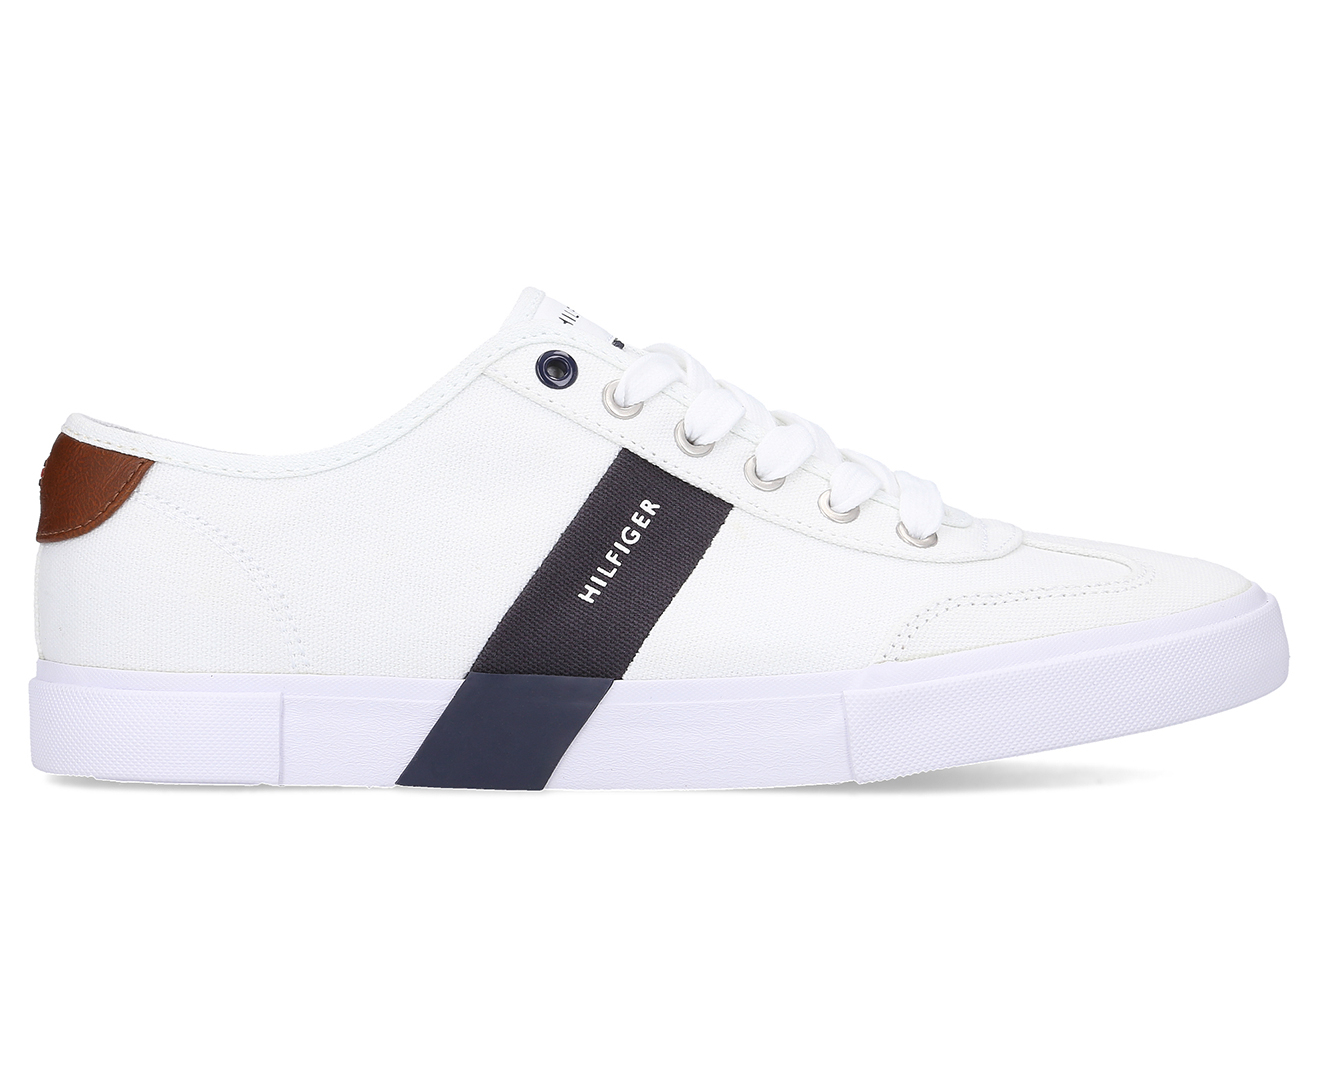 Tommy Hilfiger Men's Pandora Sneakers - White | Catch.com.au